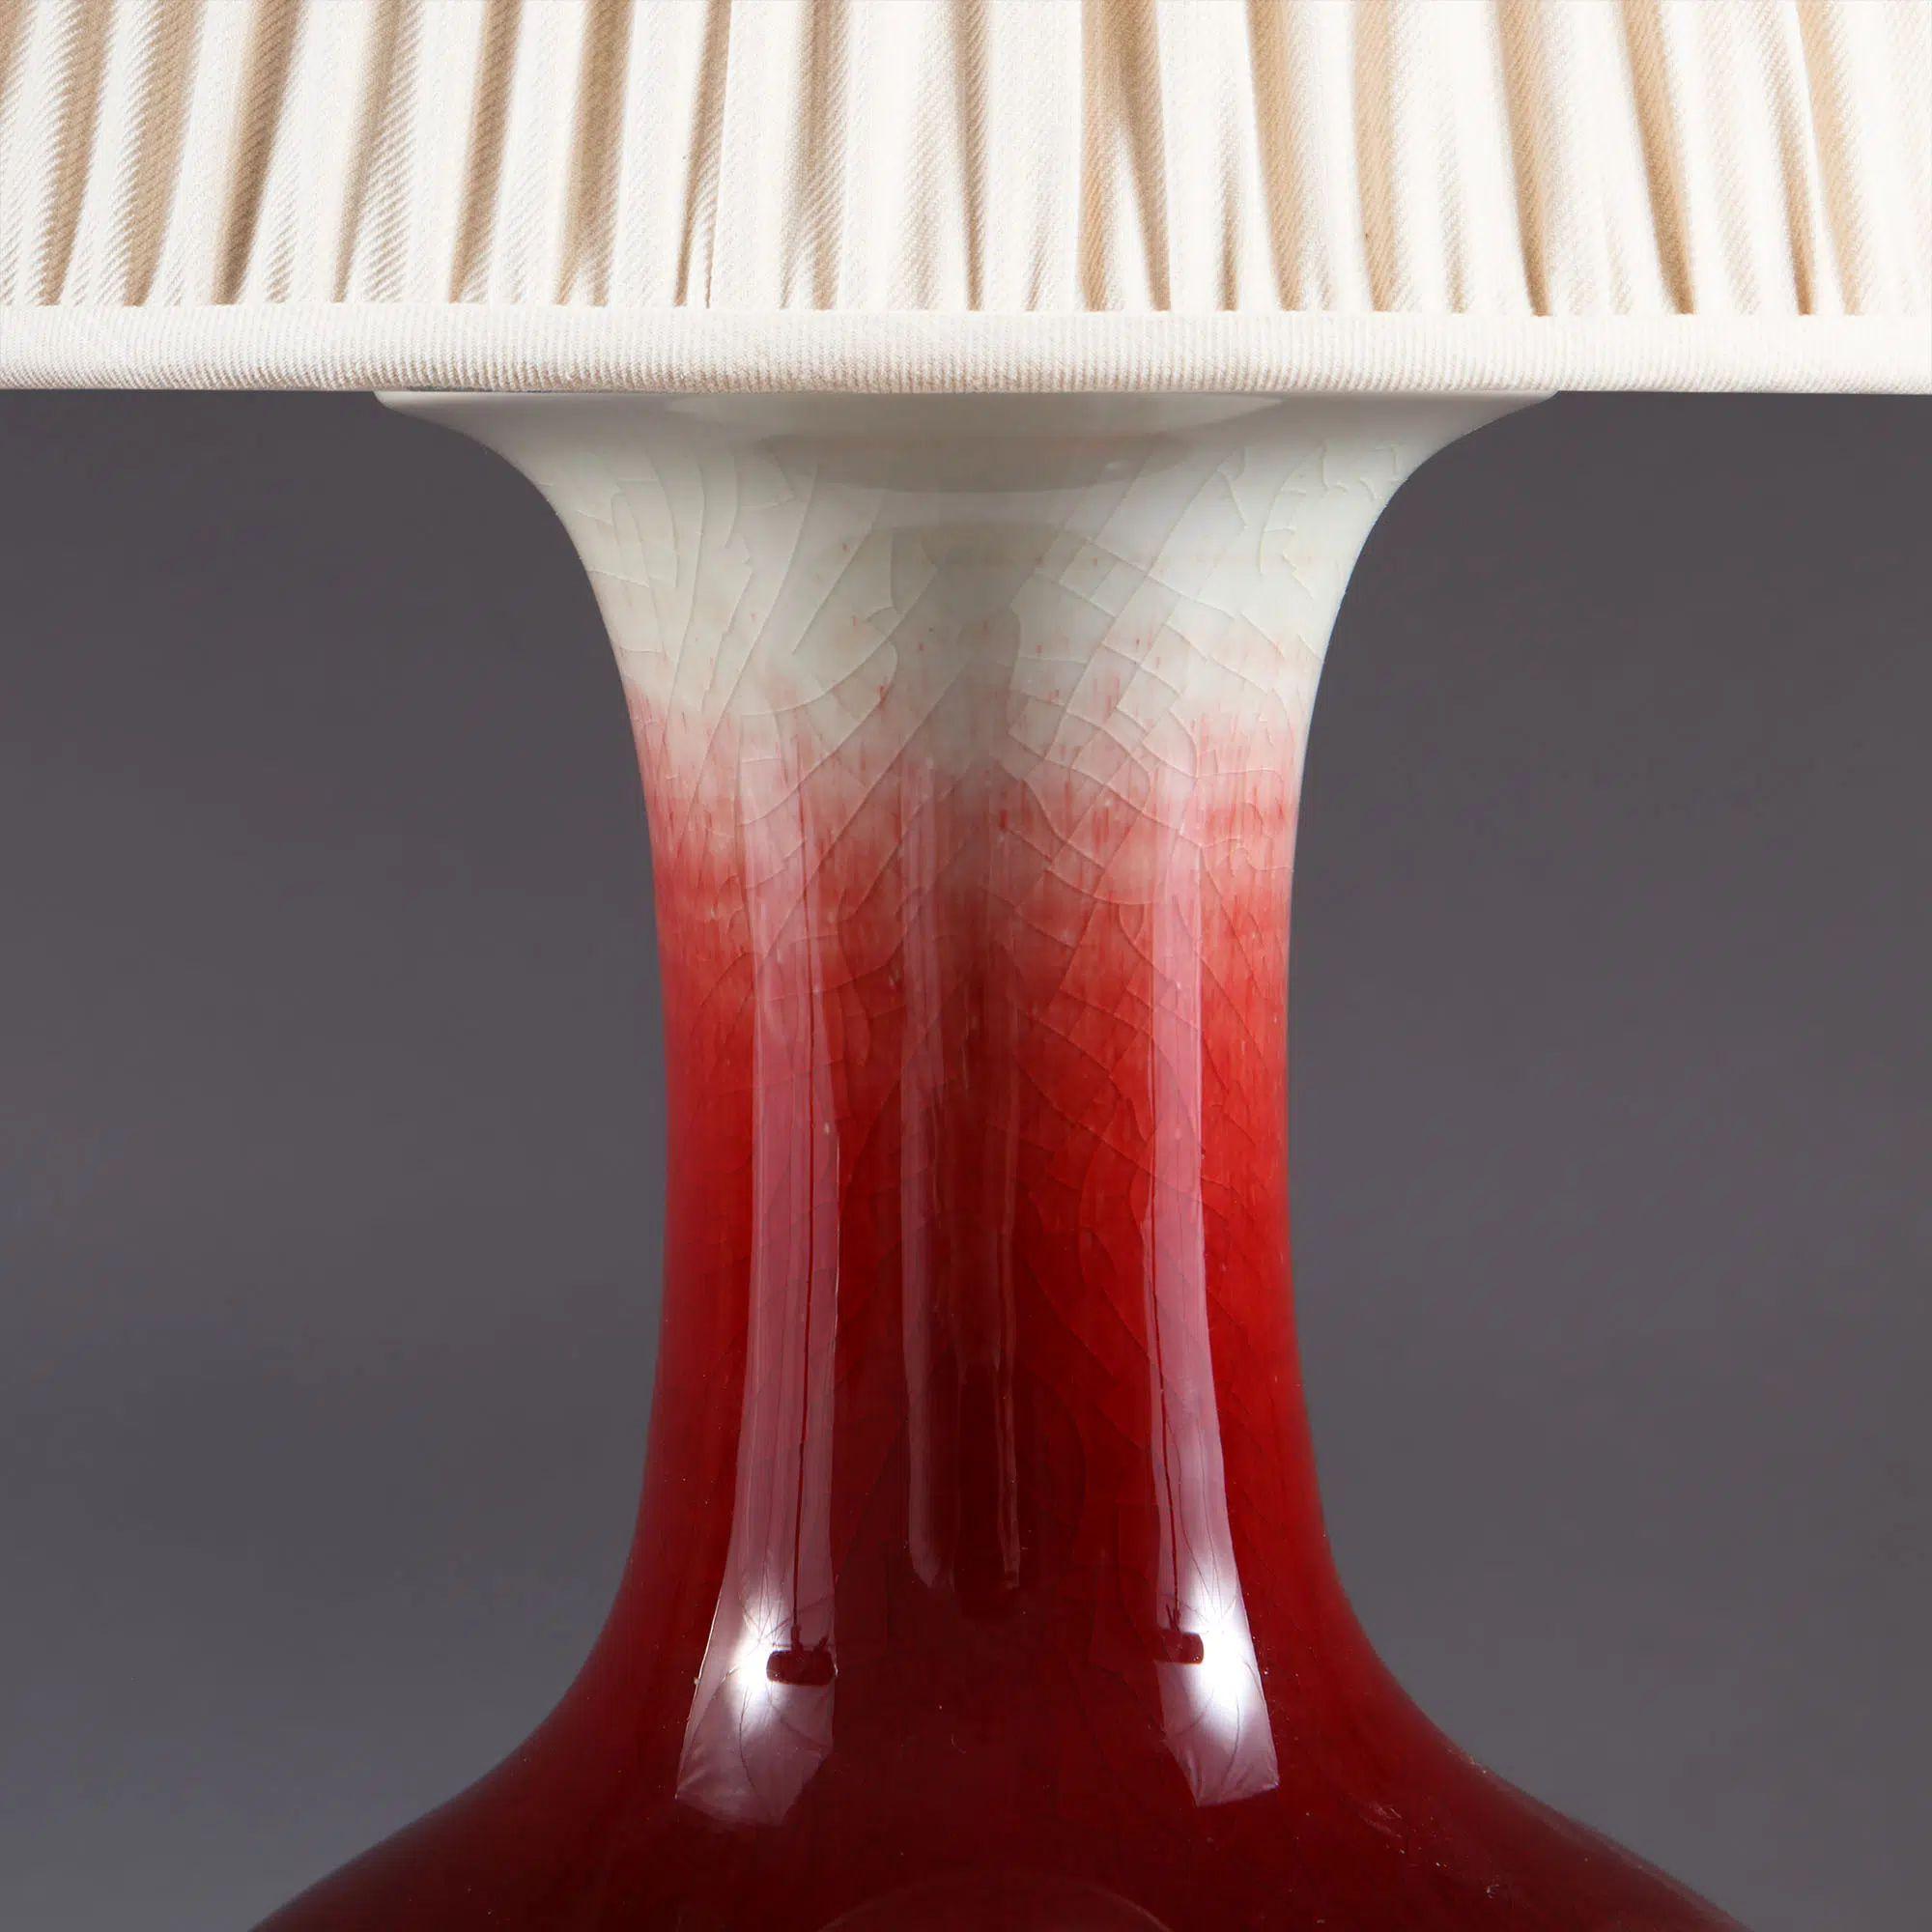 Chinesische Sang de Boeuf-Vase, montiert als Tischlampe.

Eine attraktive chinesische Sang de Boeuf-Vase mit ausgestelltem Rand. Der Hals geht allmählich von einer klaren Glasur in ein sattes Blutrot über, der Boden ist mit blauen und violetten